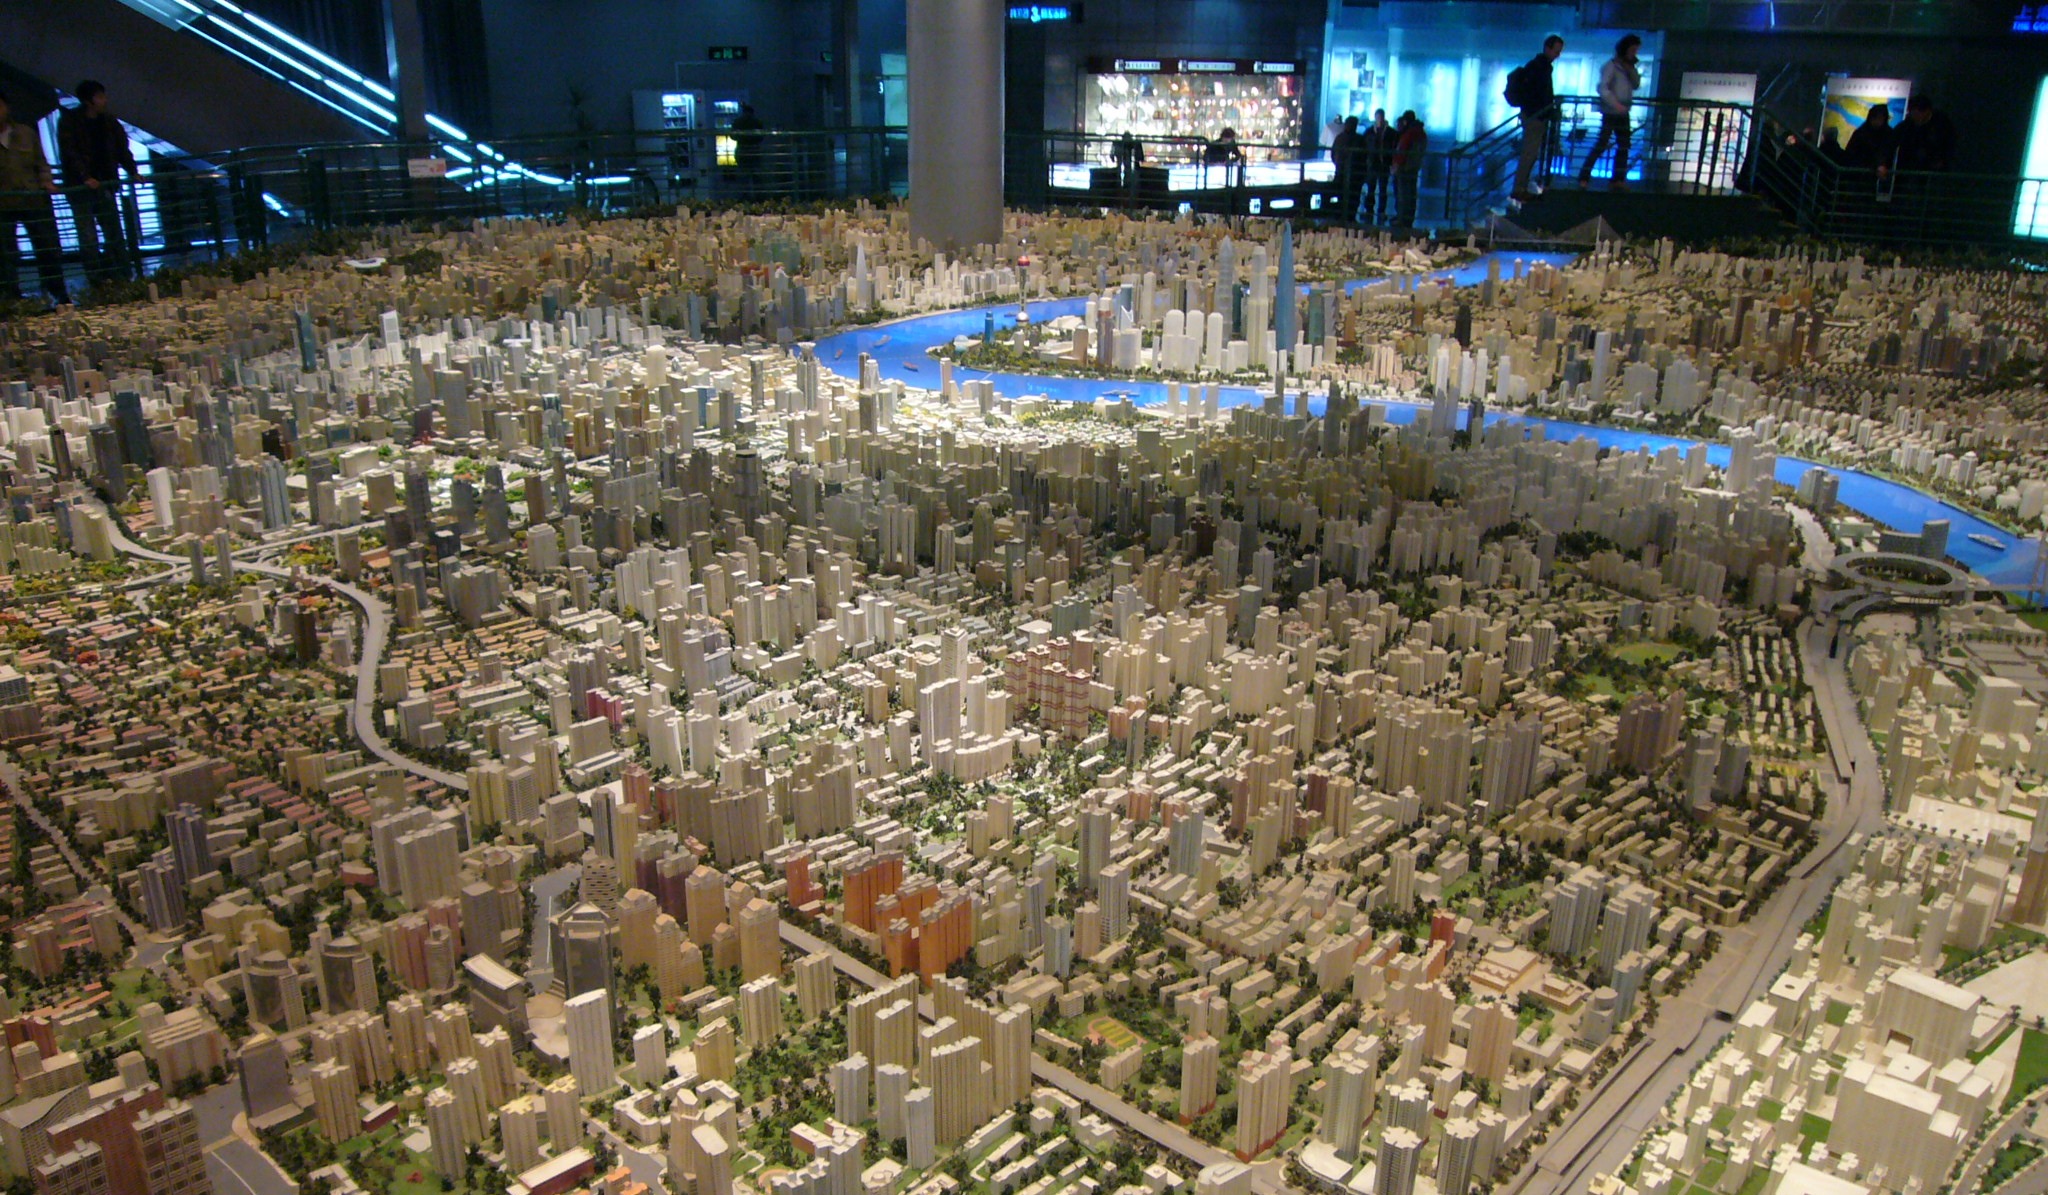 Shanghai_2020_-_Urban_Planning_Exhibition_Center_-_03